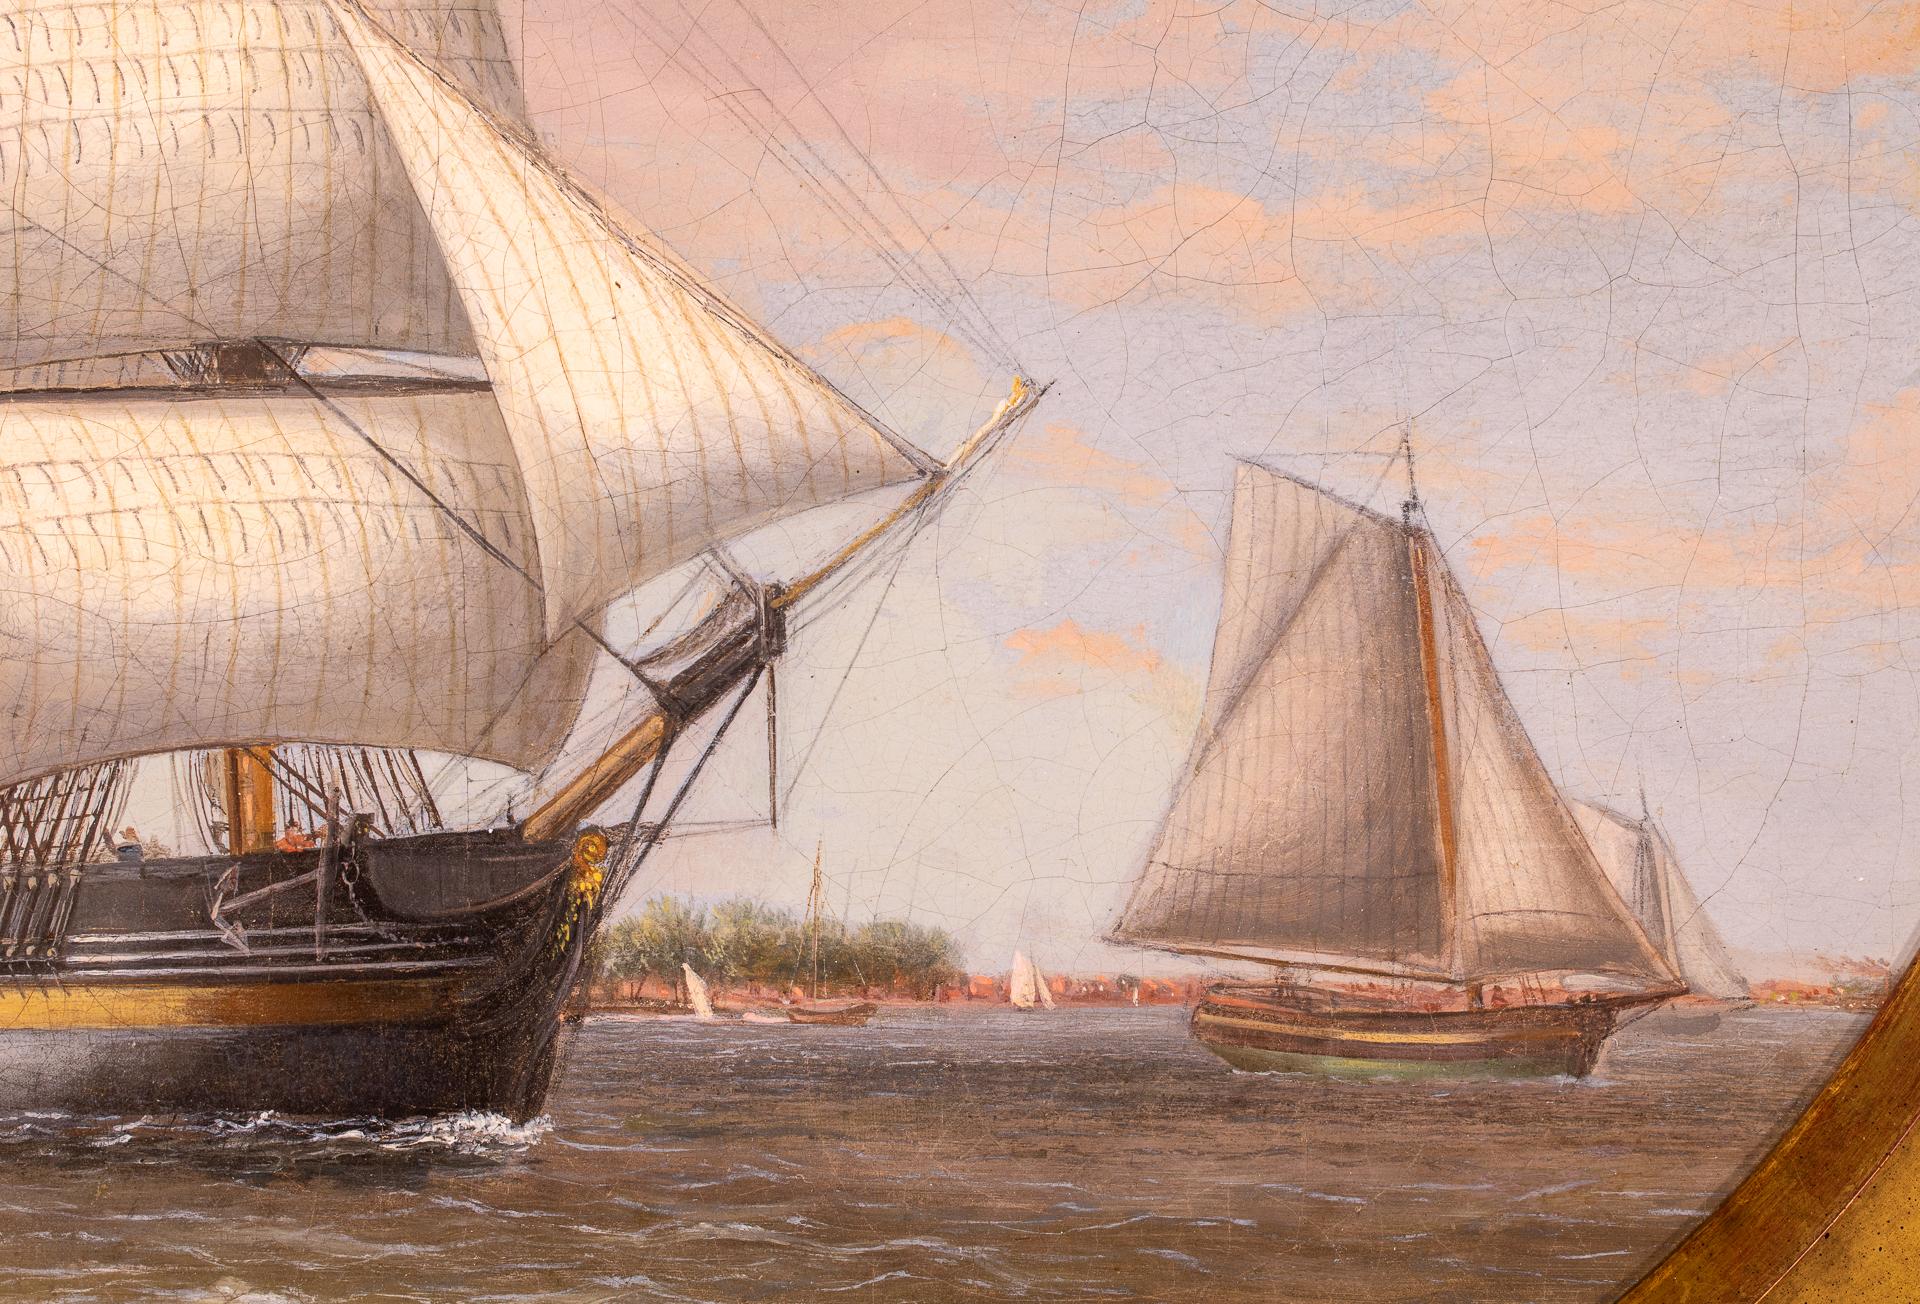 Thomas Birch est considéré comme l'un des premiers peintres de marines américains d'importance à la fois pour son époque et pour l'histoire, formant la base de ce qui allait devenir un grand mouvement maritime américain dans les années successives